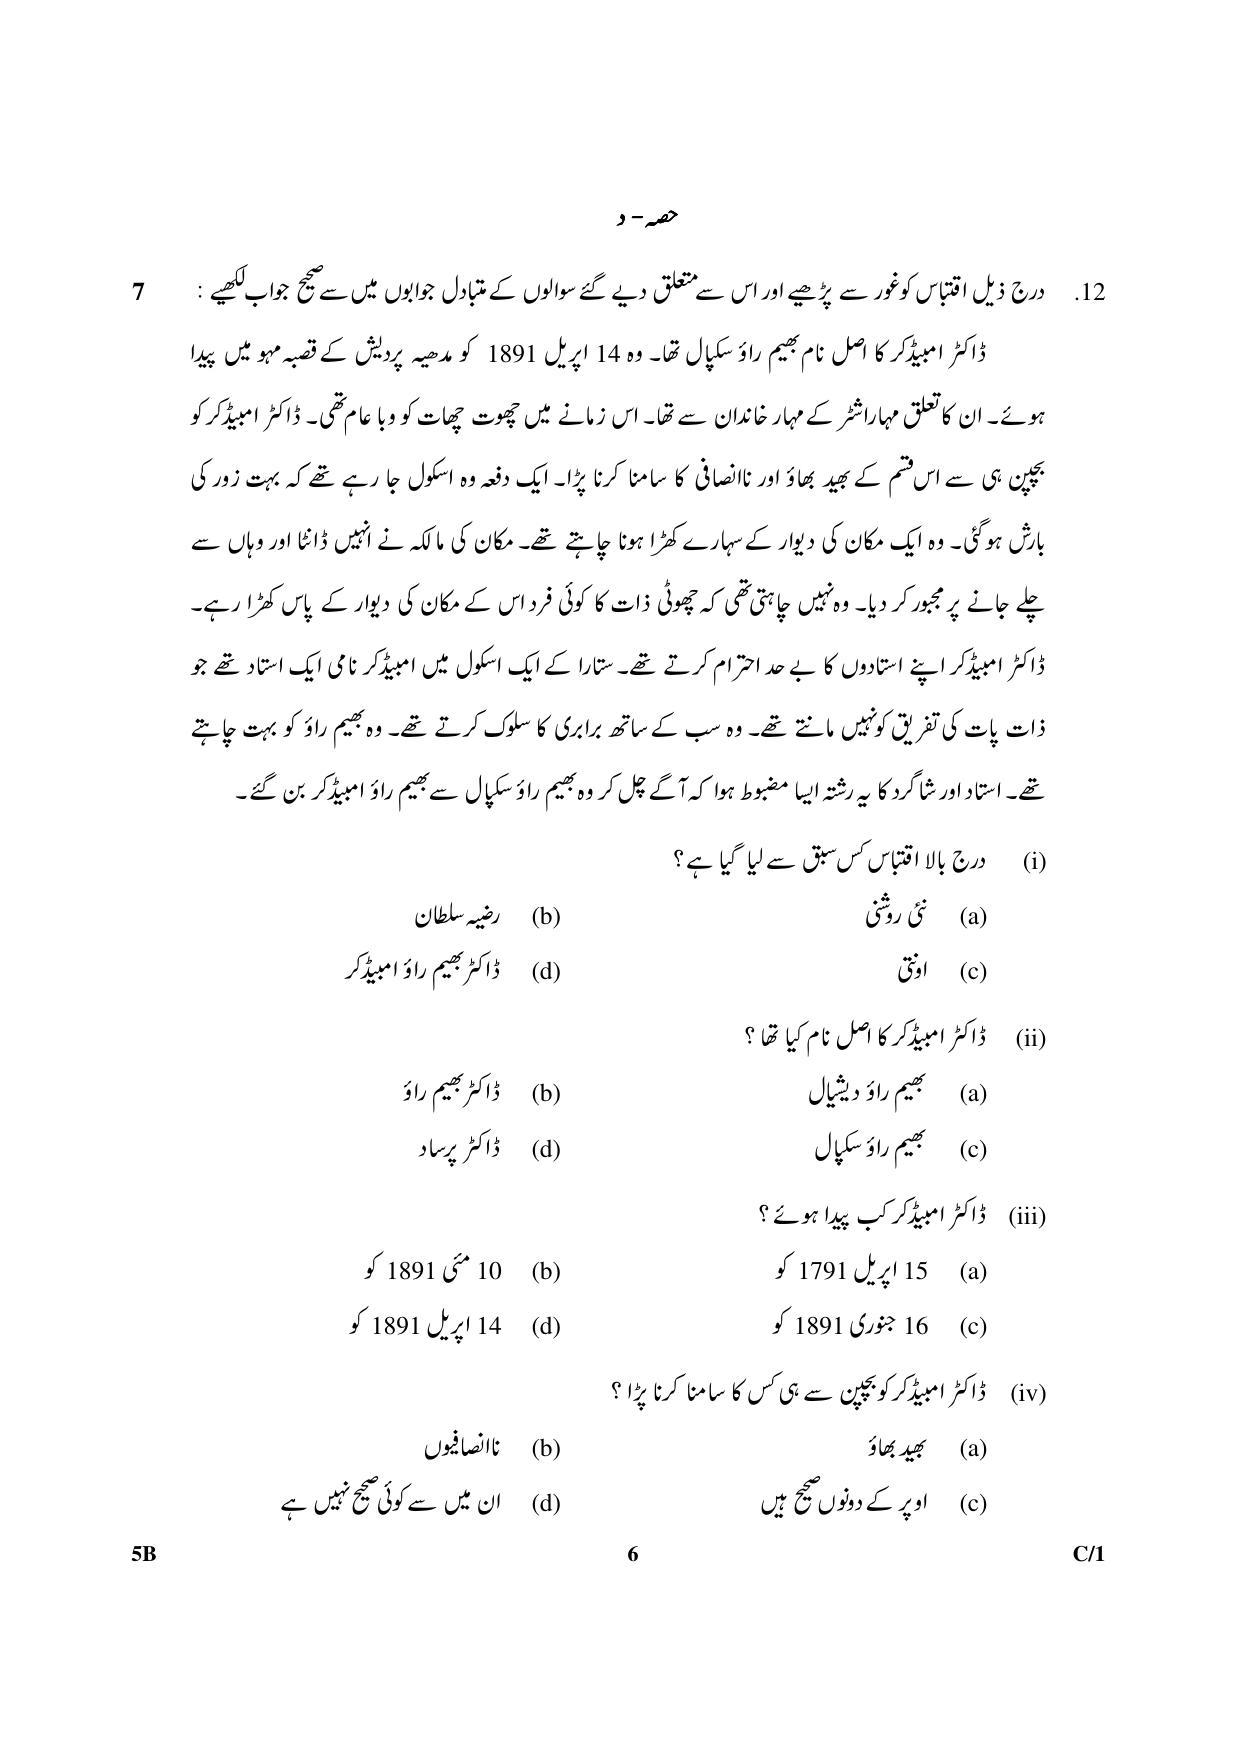 CBSE Class 10 5B Urdu (Course B) 2018 Compartment Question Paper - Page 6